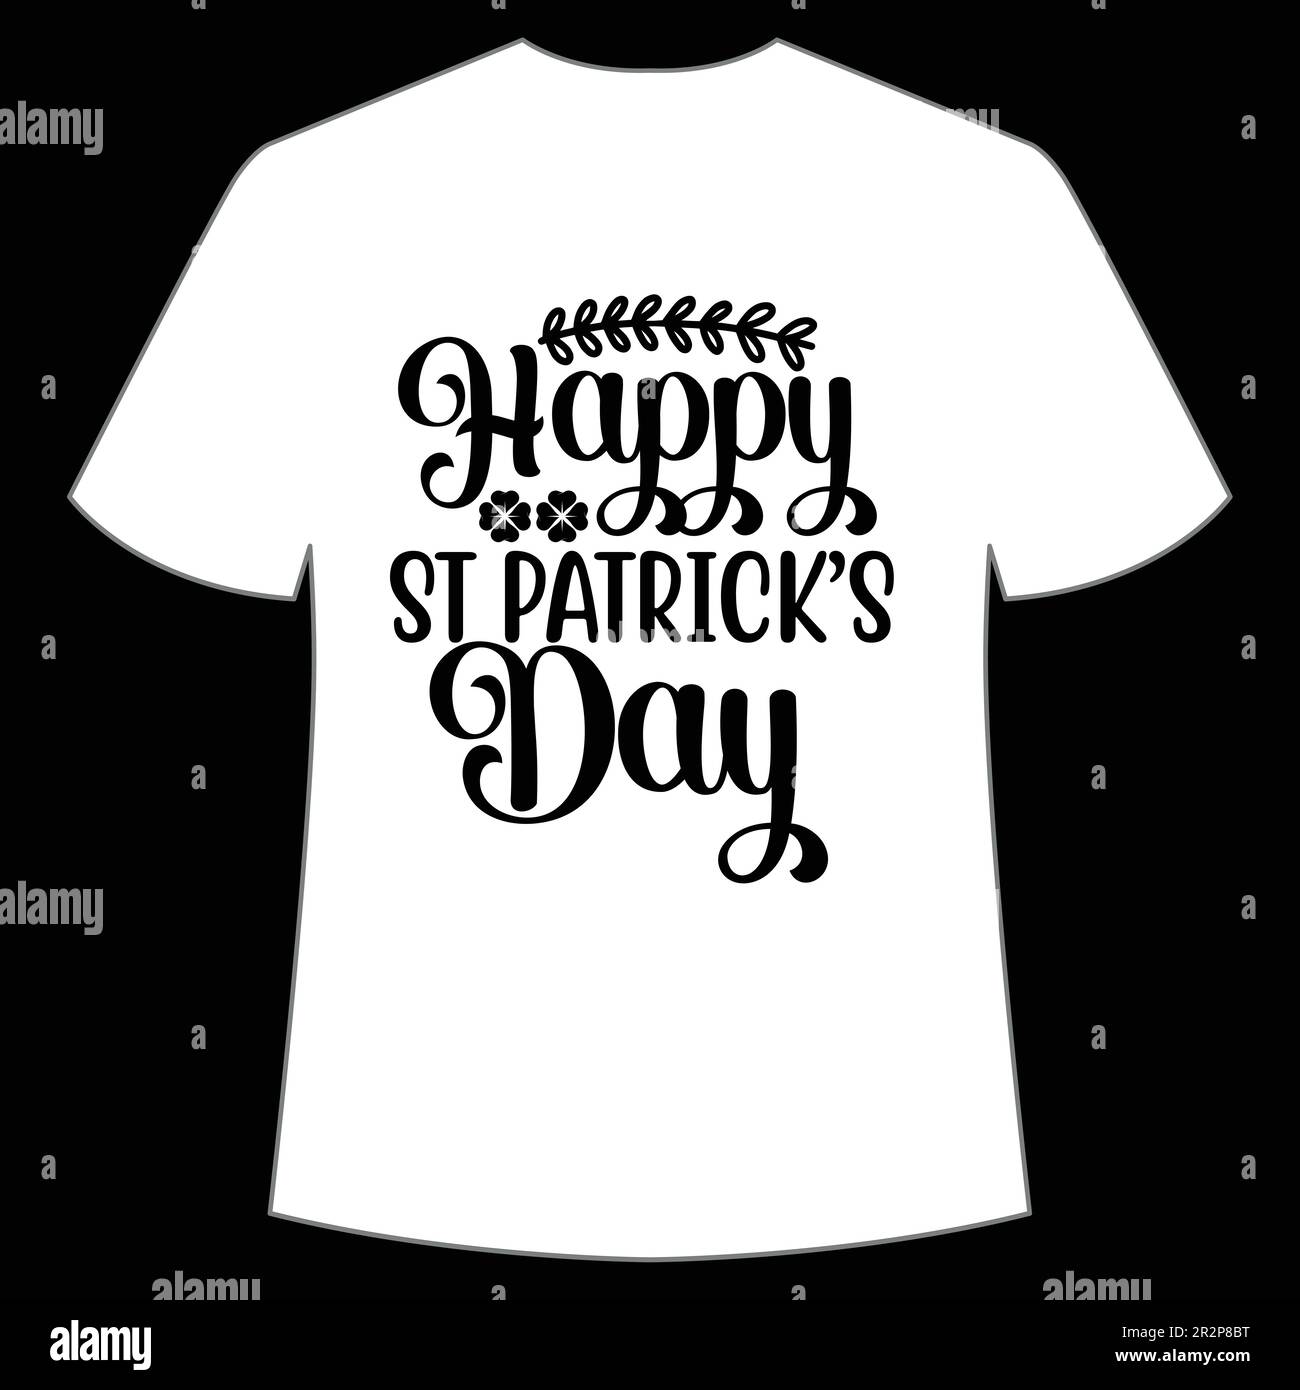 St. Patrick's Day Shirt Design Print Template, Lucky Charms, irisch, jeder hat ein bisschen Glück Typografie Design Stock Vektor